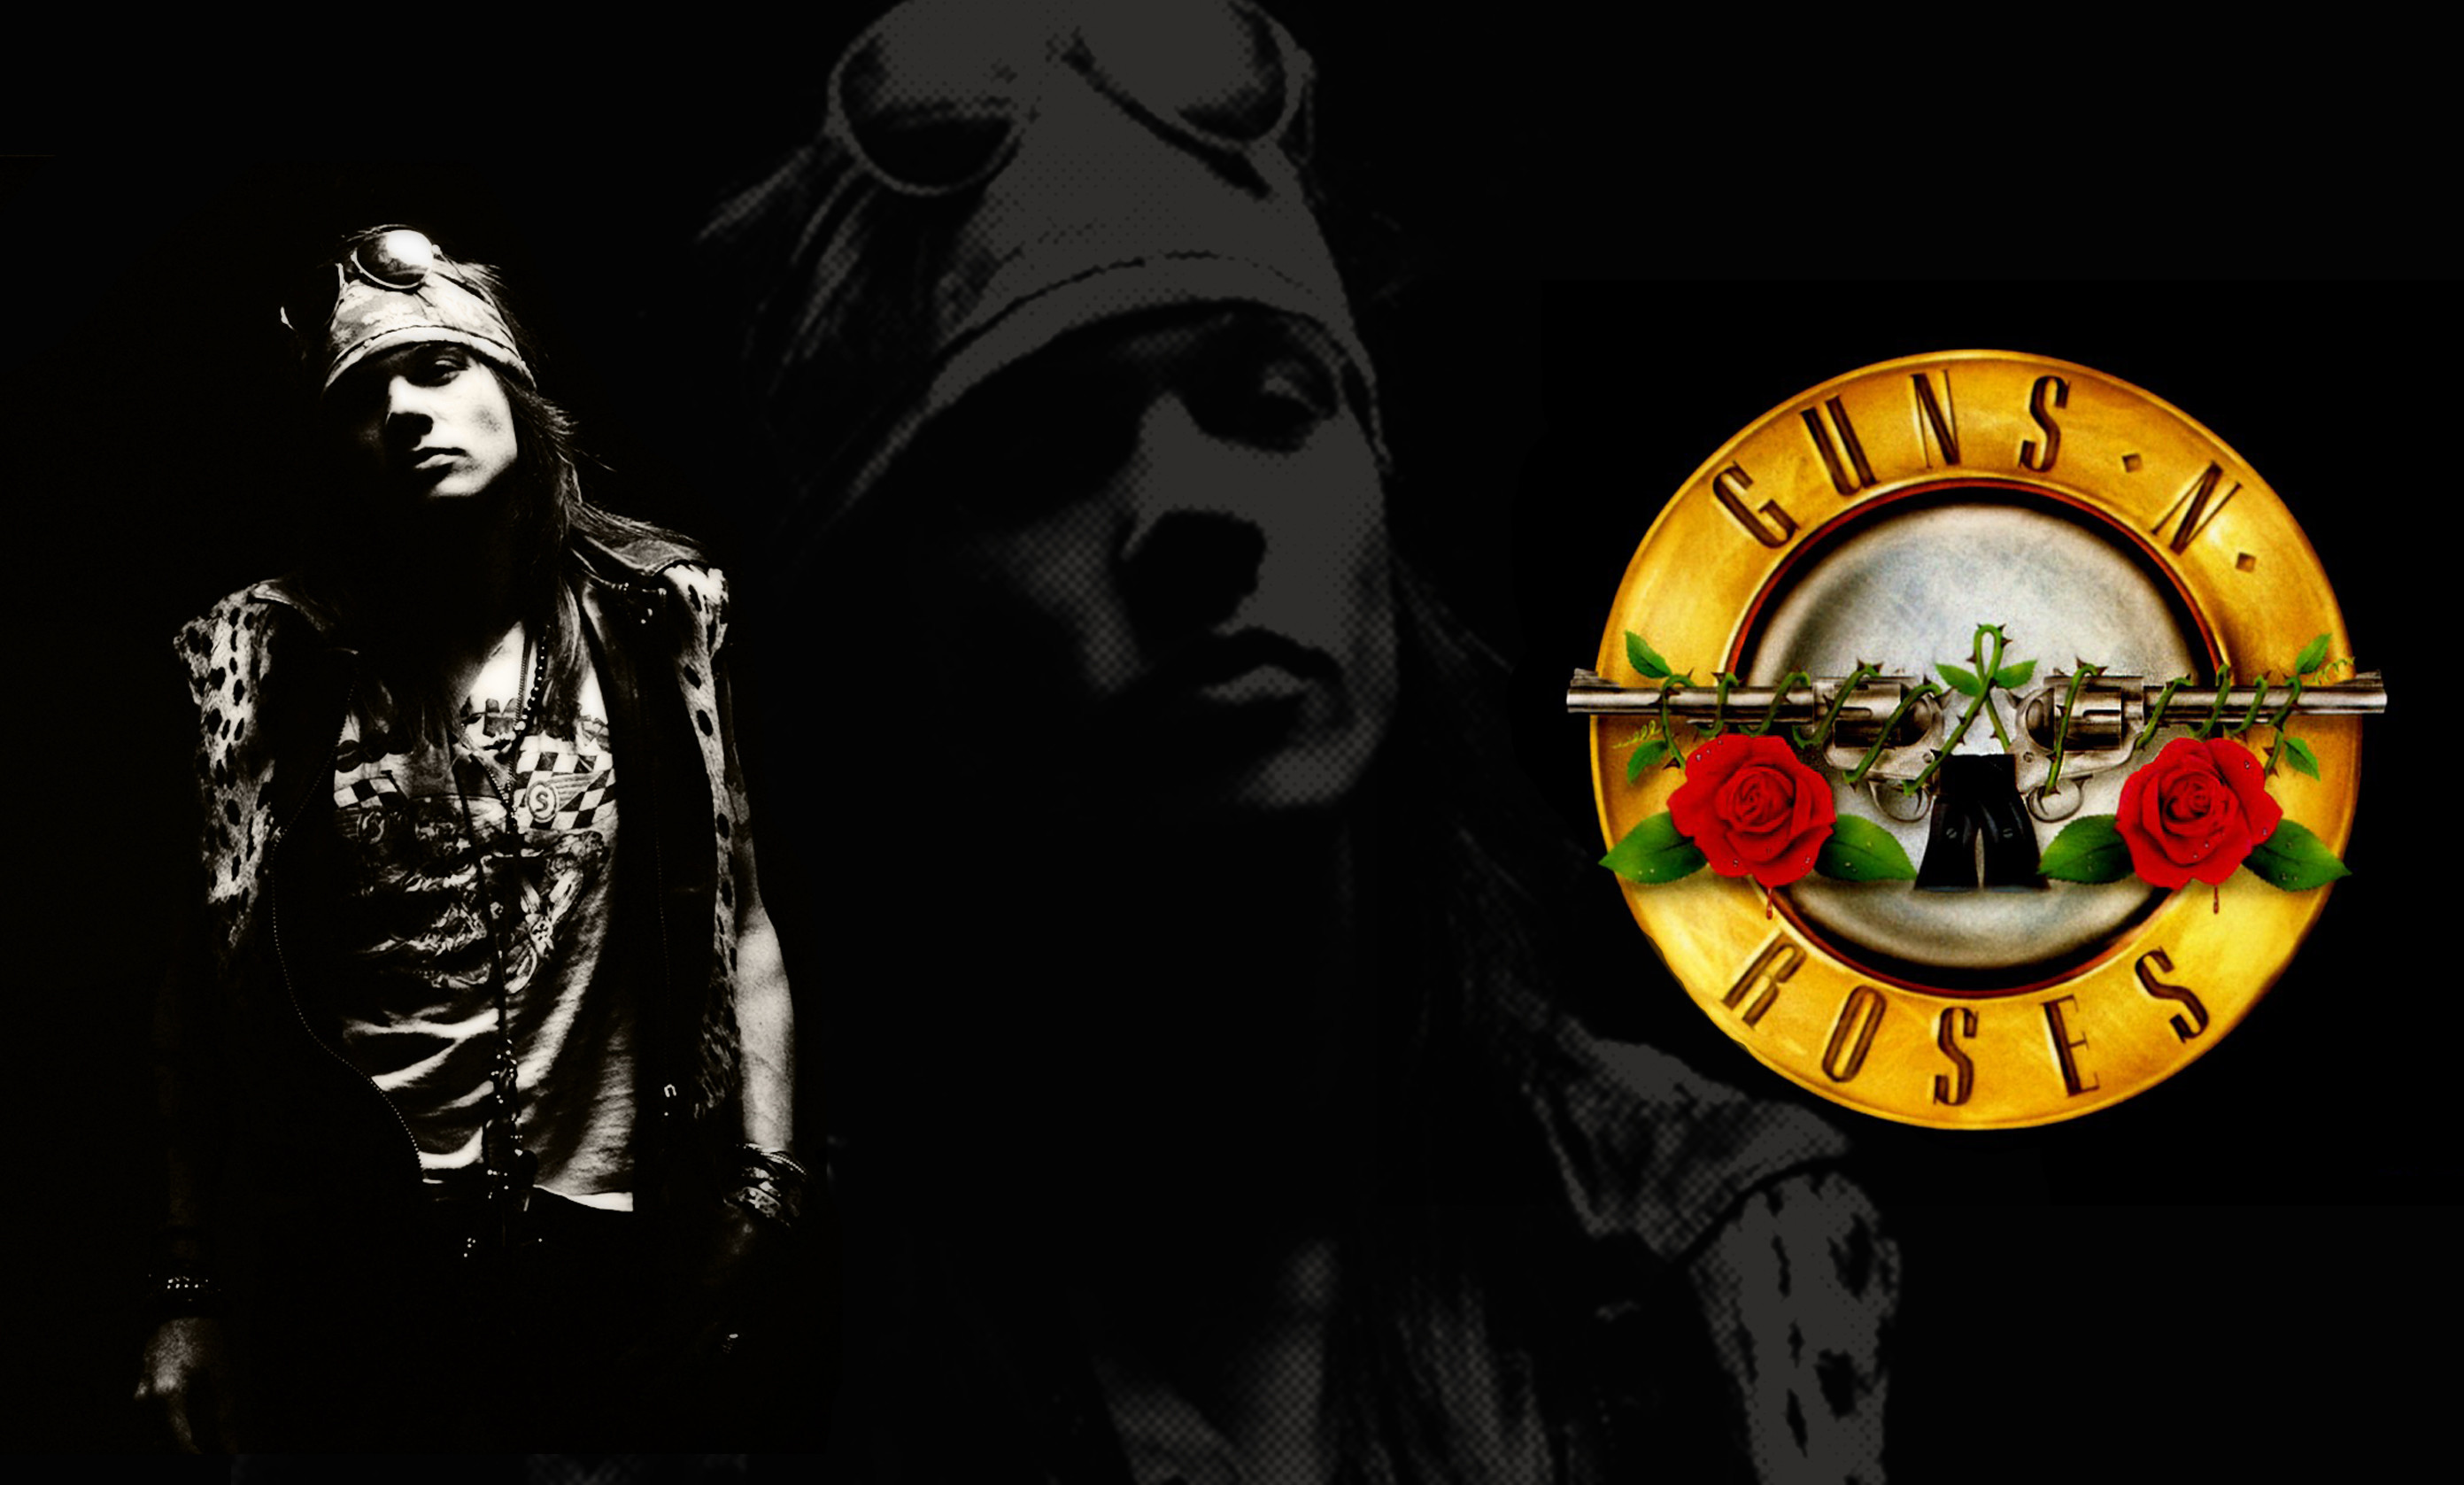 100+] Guns N Roses Wallpapers | Wallpapers.com